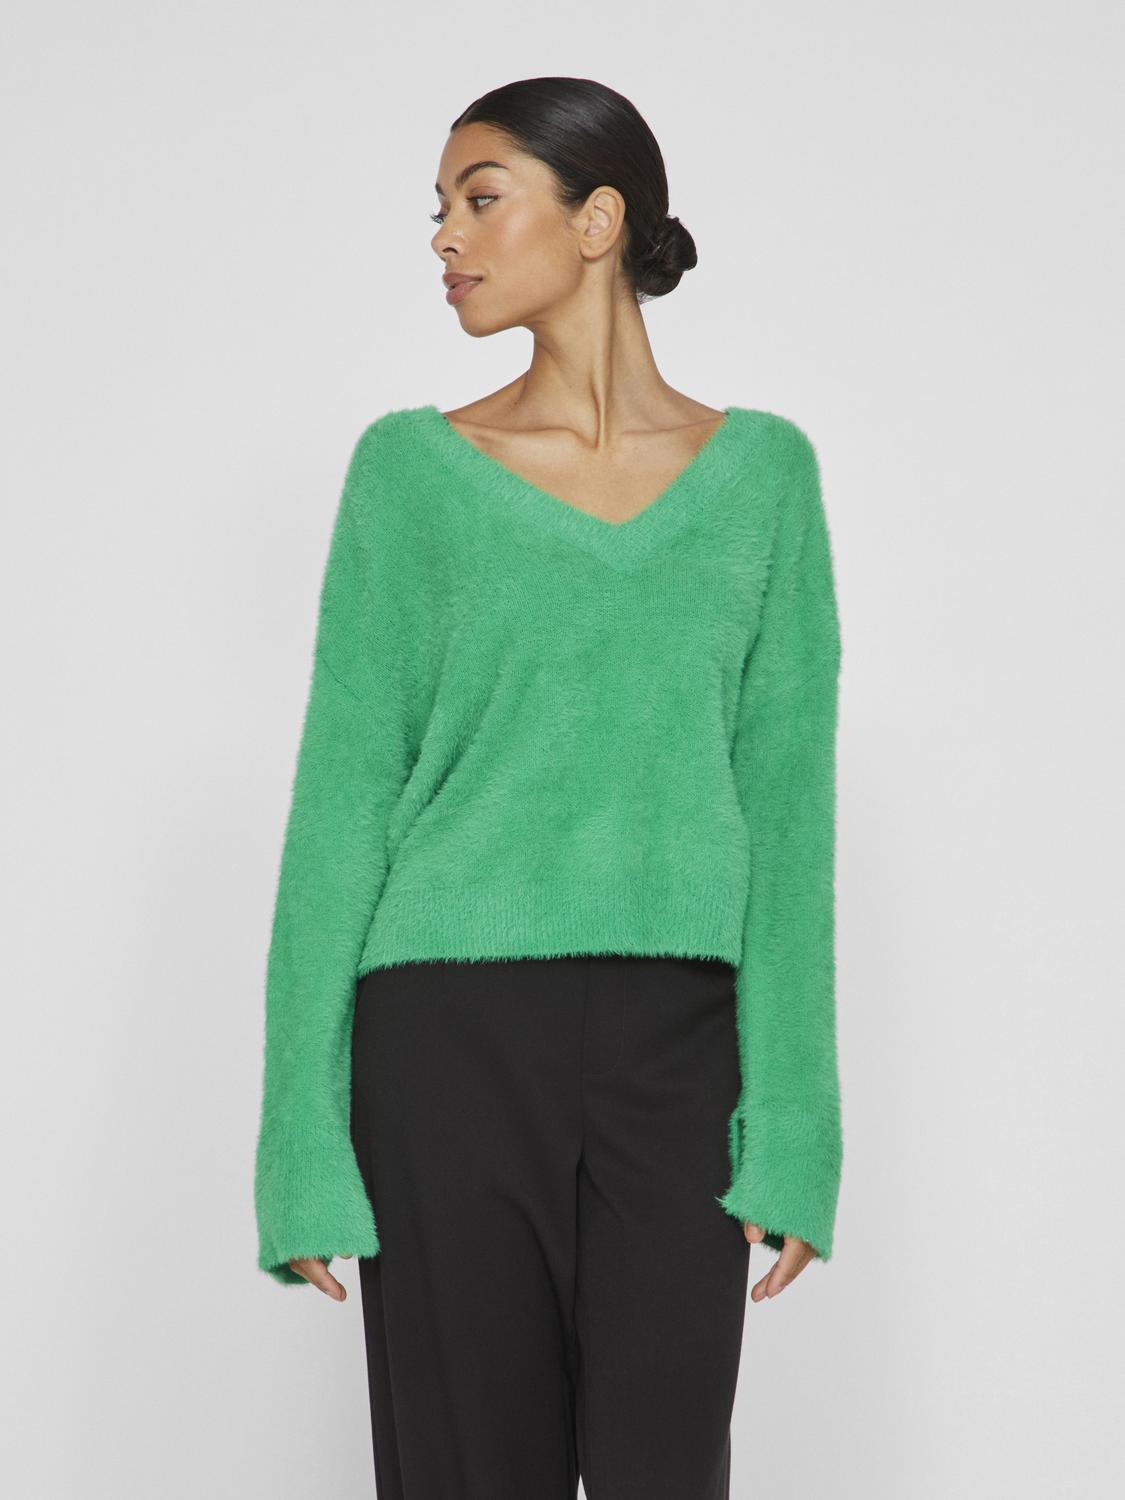 VIHENNY Pullover - Bright Green